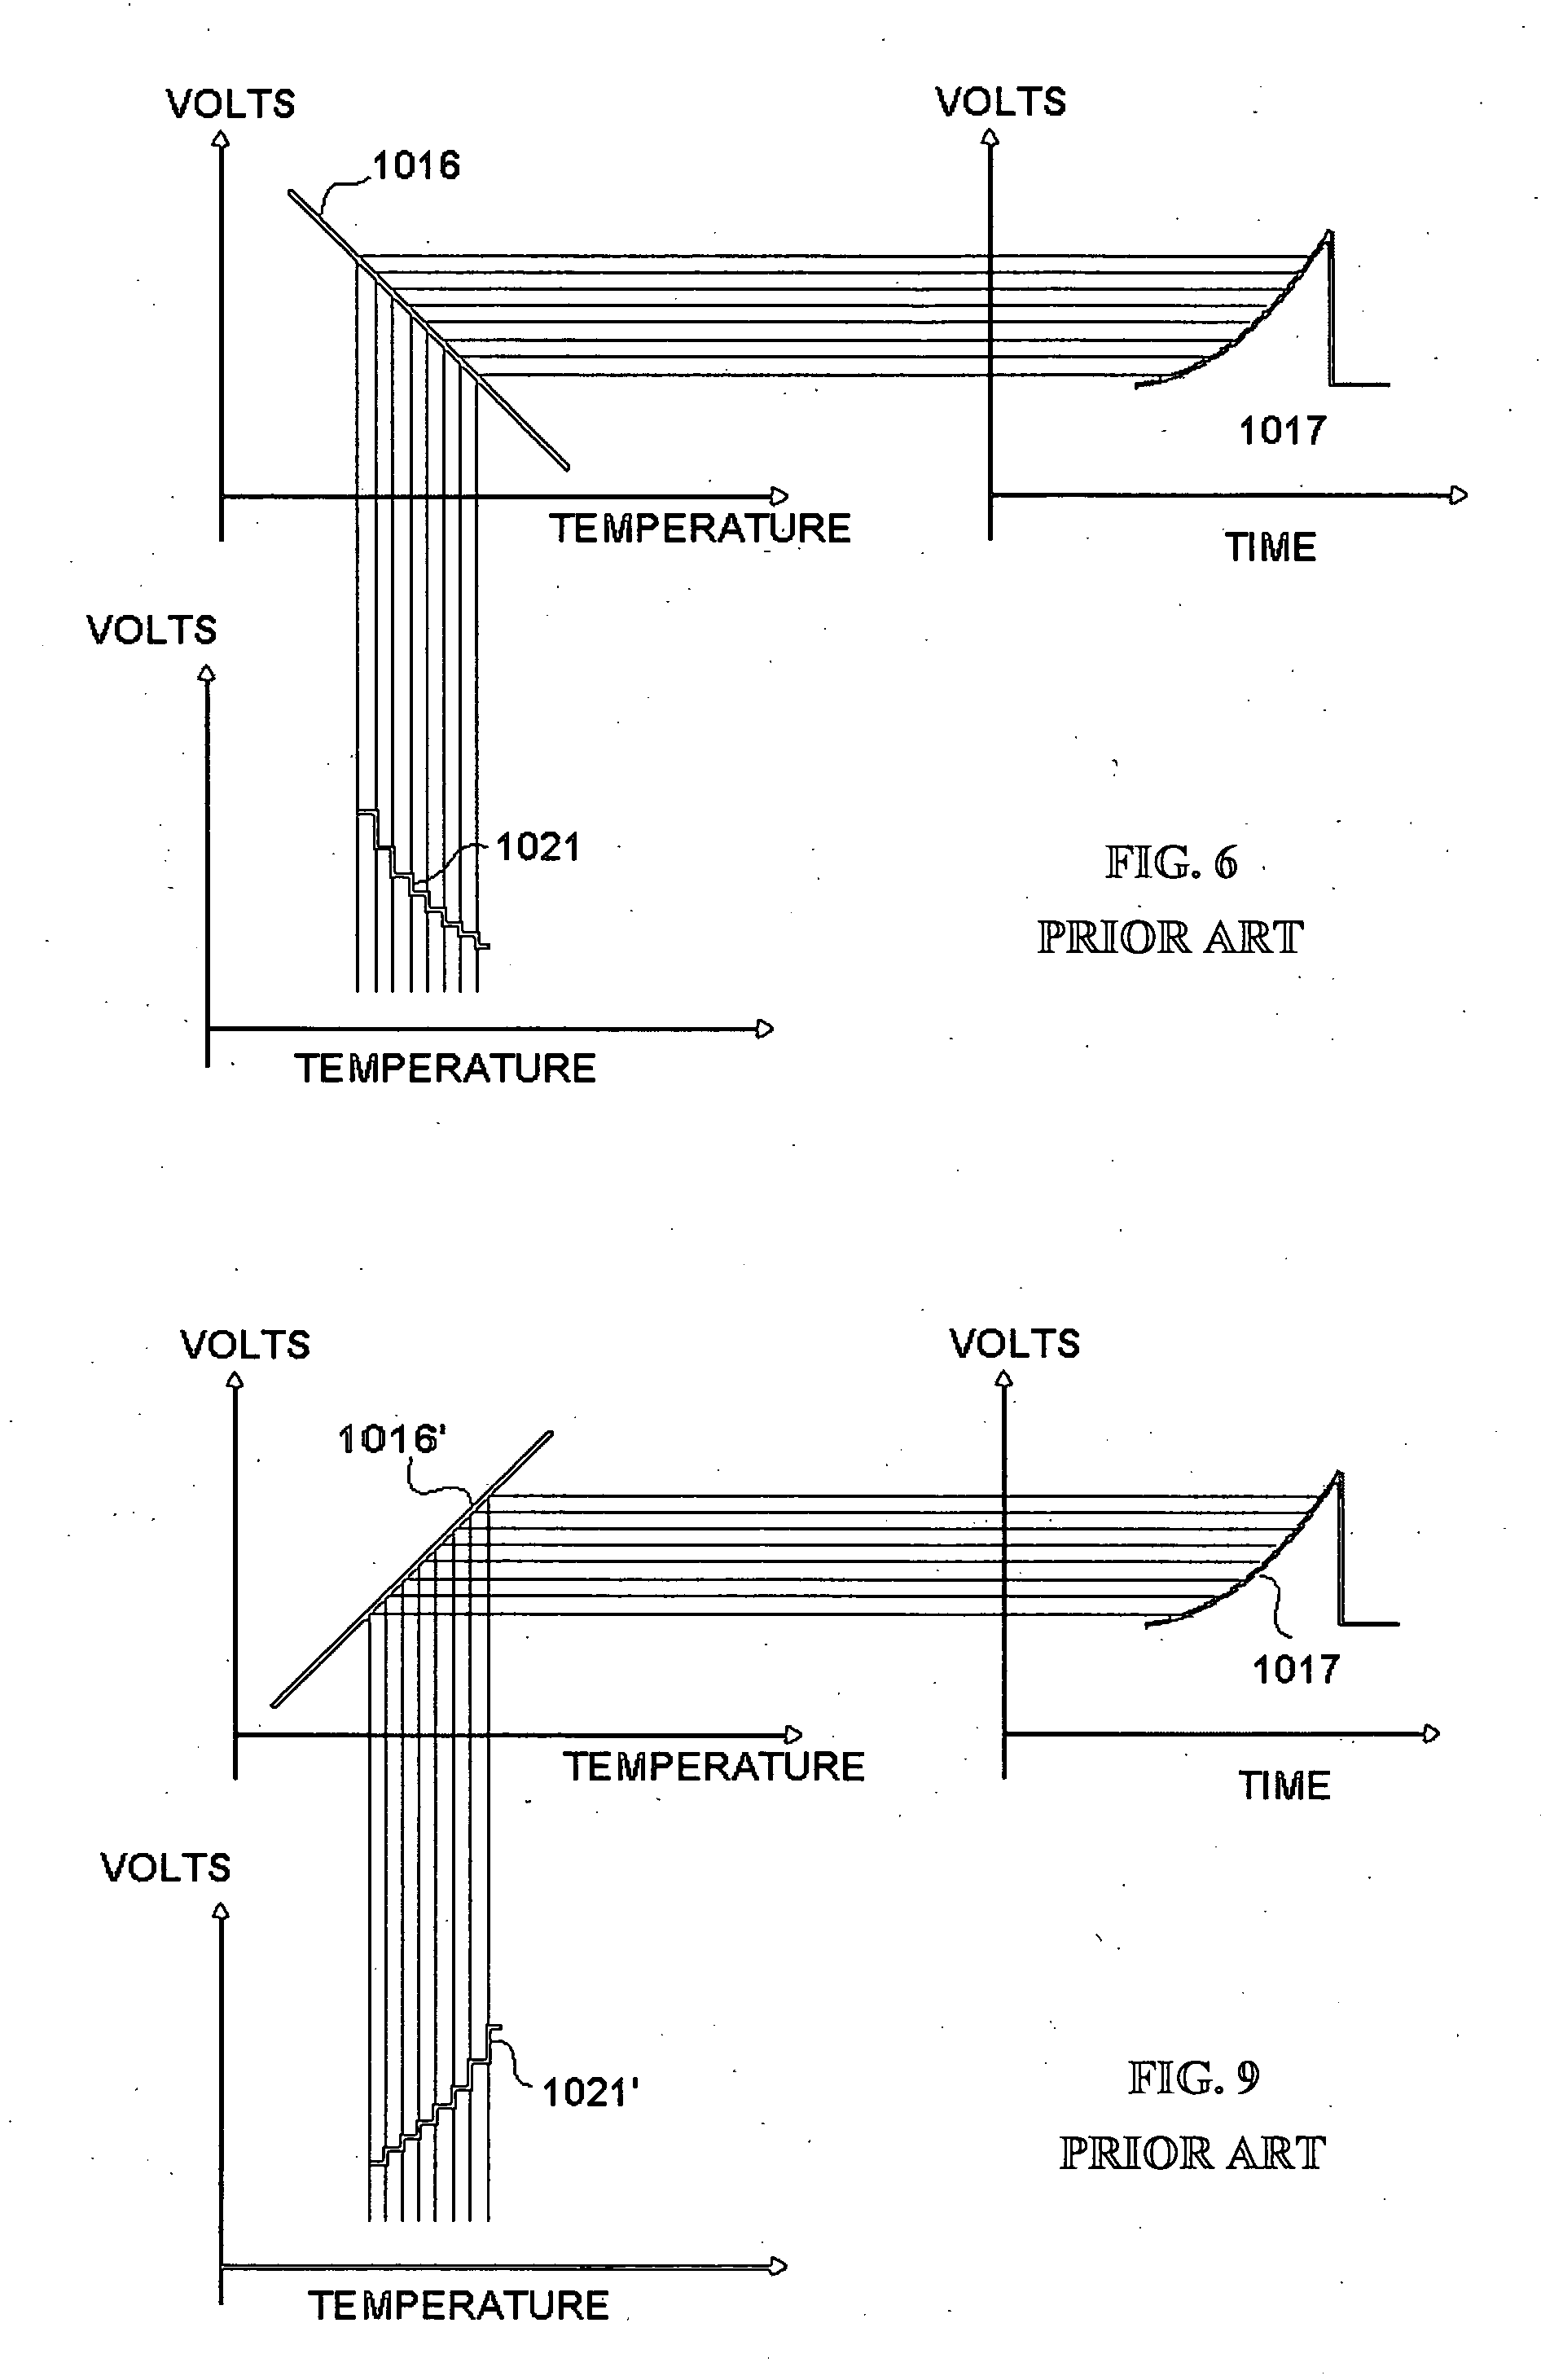 Temperature compensation circuit